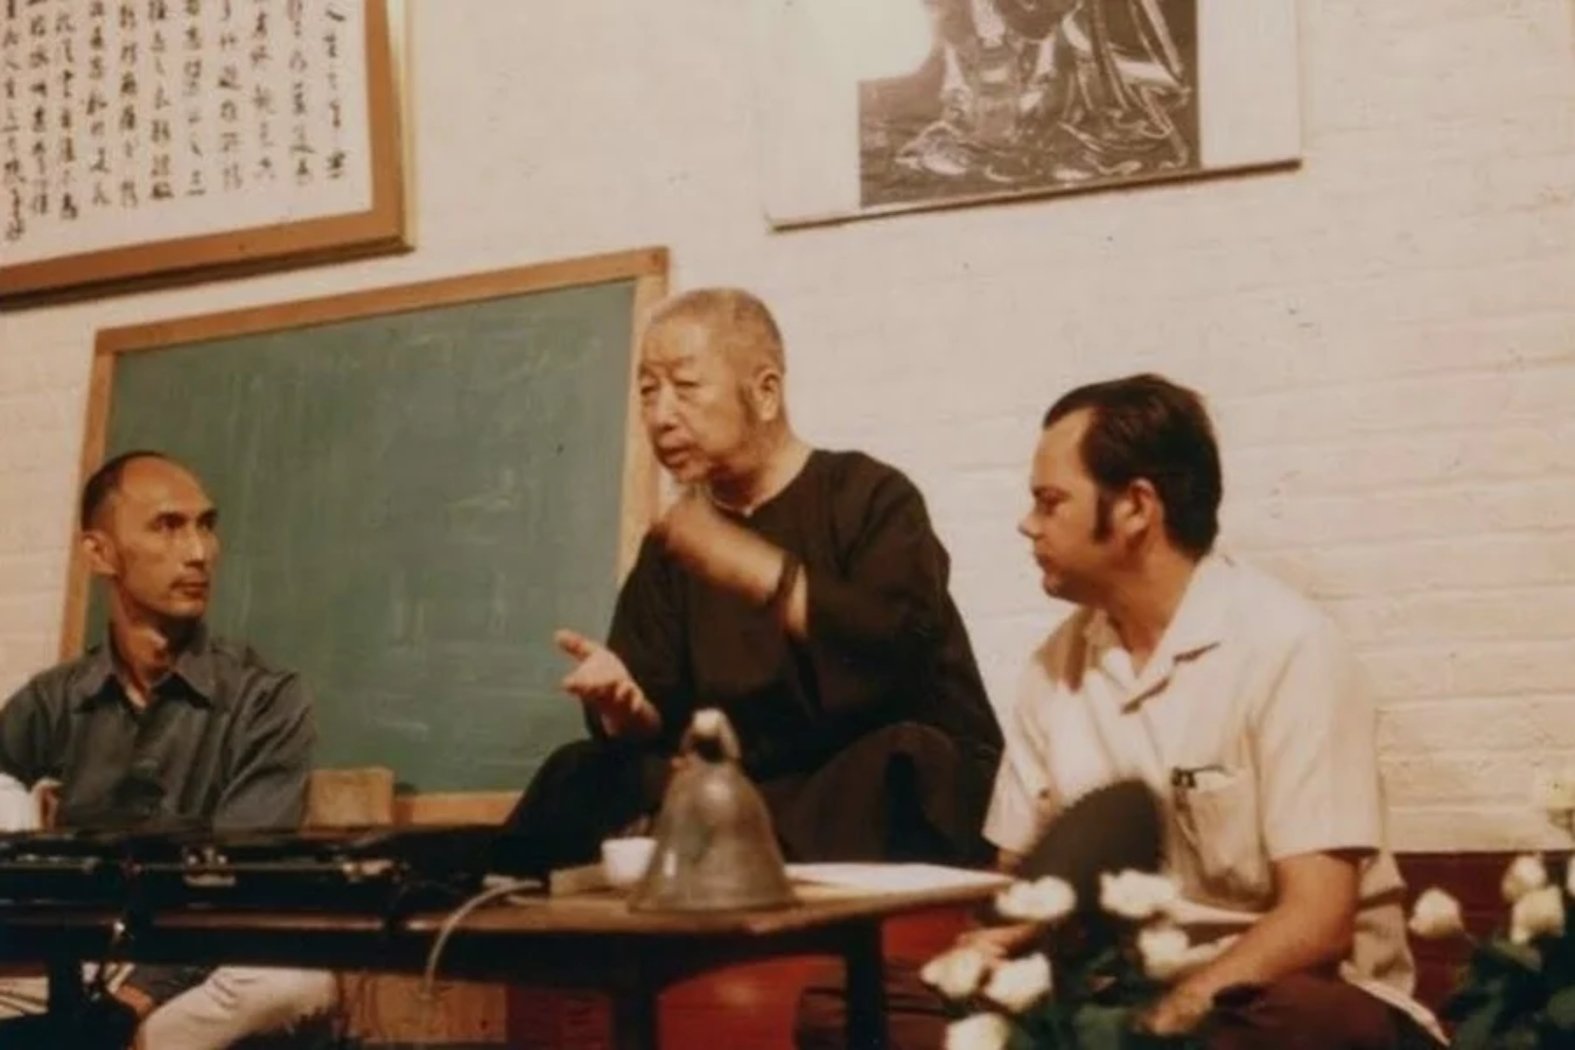 Le professeur Cheng Man Ching en train de faire un cours magistral avec les étudiants Ed Young et Tam Gibbs assis à ses côtés